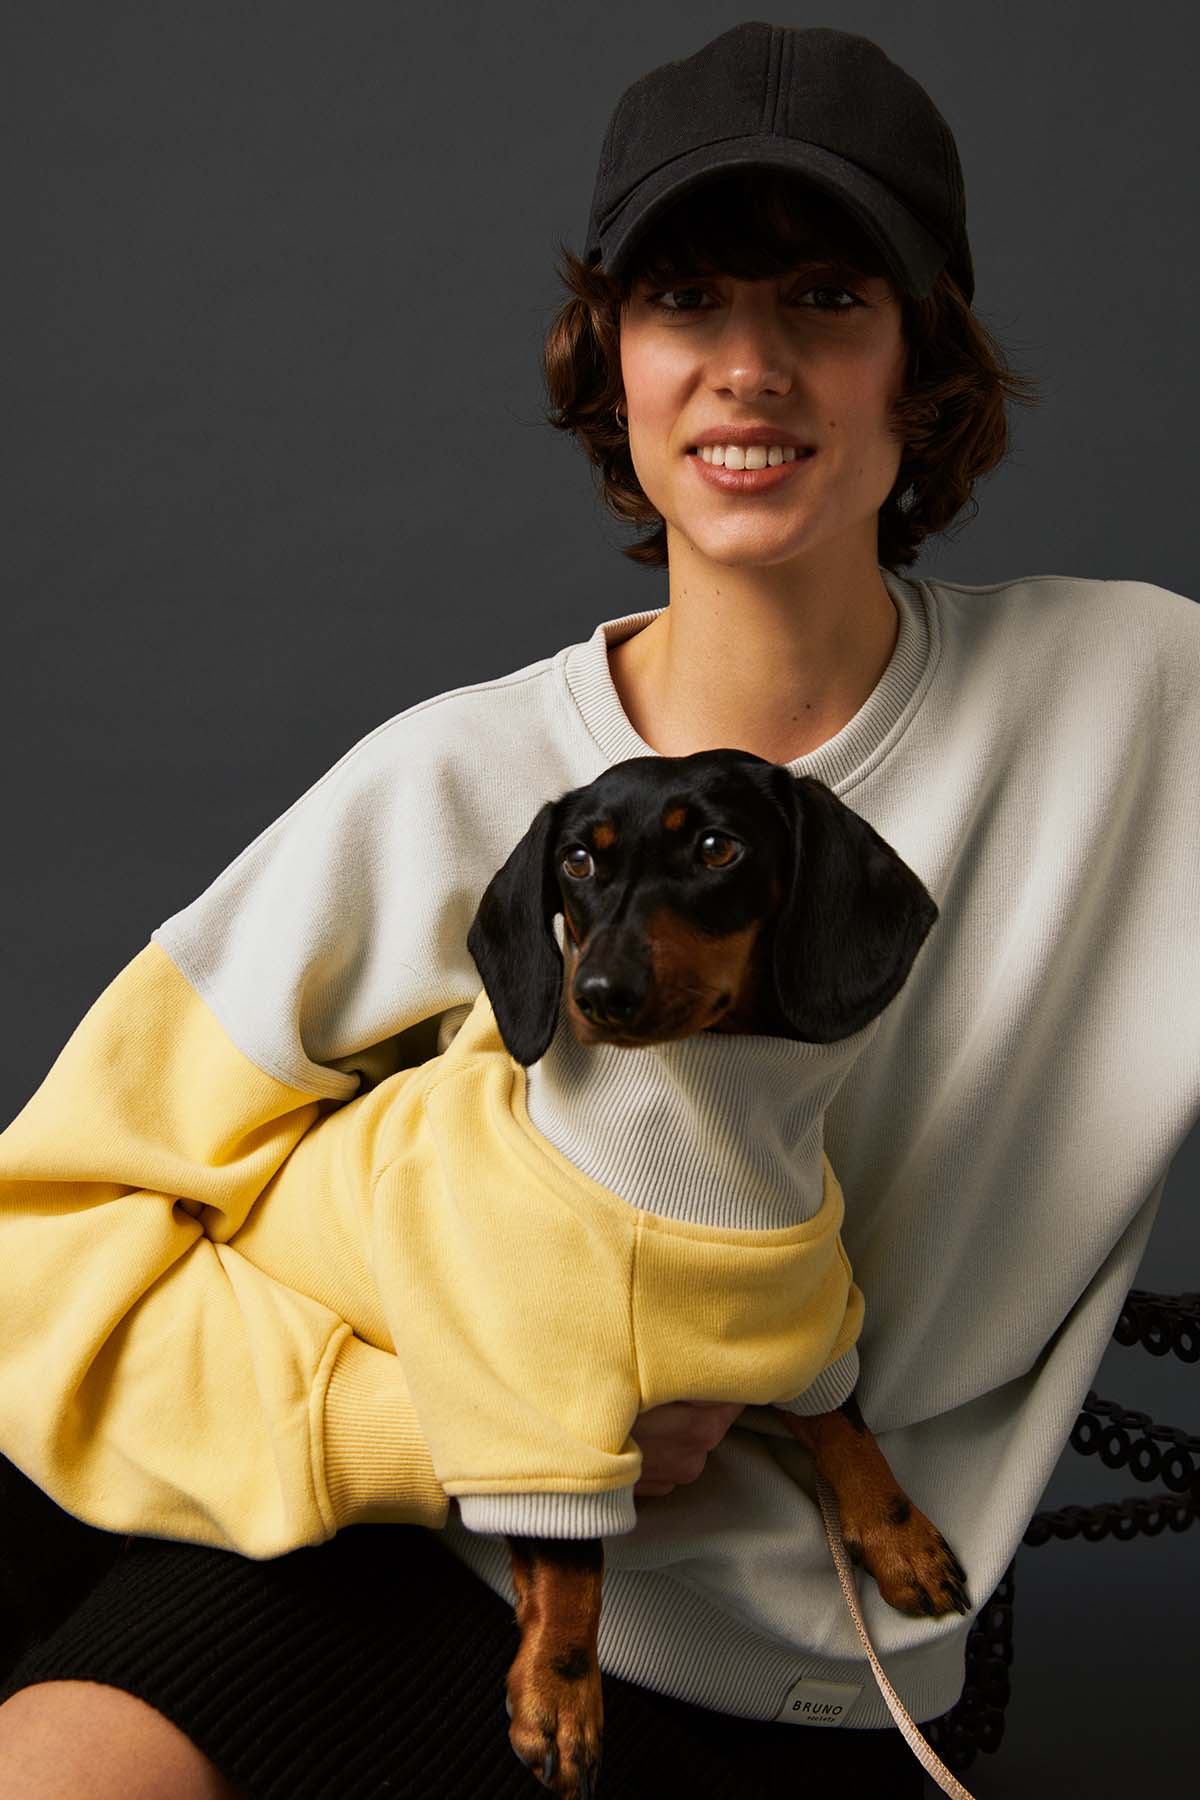 Unisex Oversize Sweatshirt - Taş Grisi/Soluk Sarı - Bruno Society